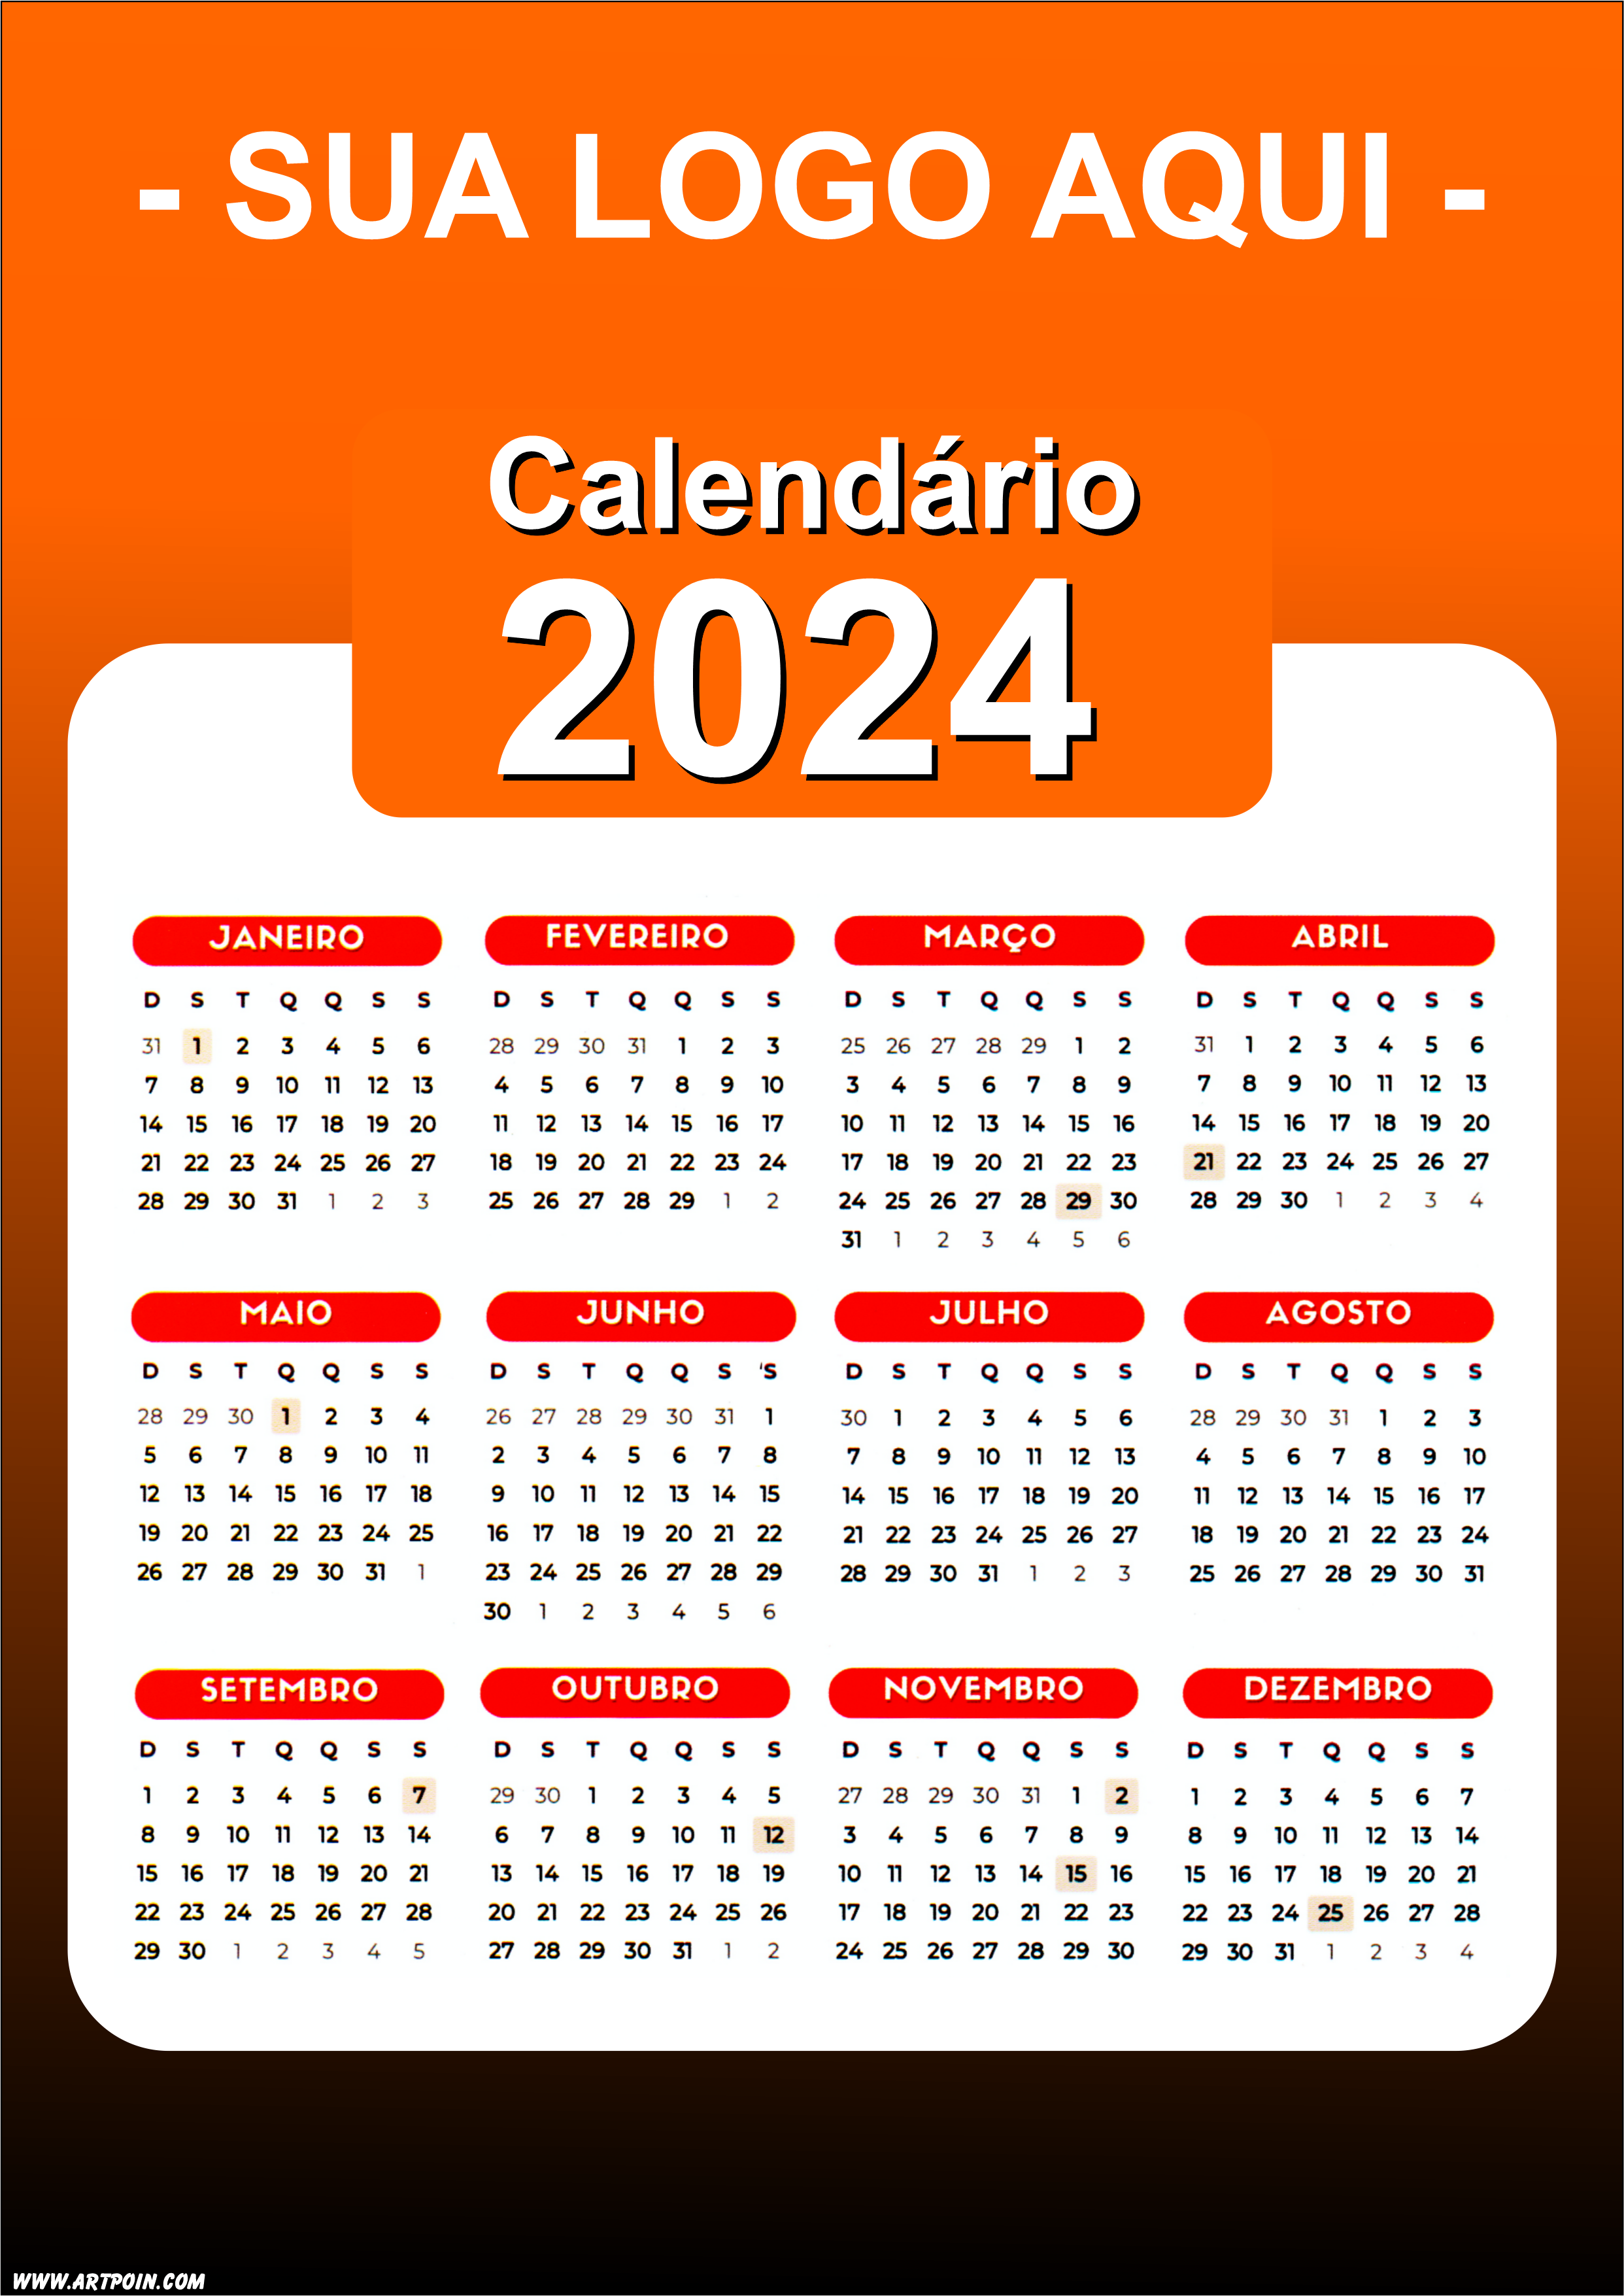 Calendário 2024 modelo laranja para personalização com a logo da sua loja png